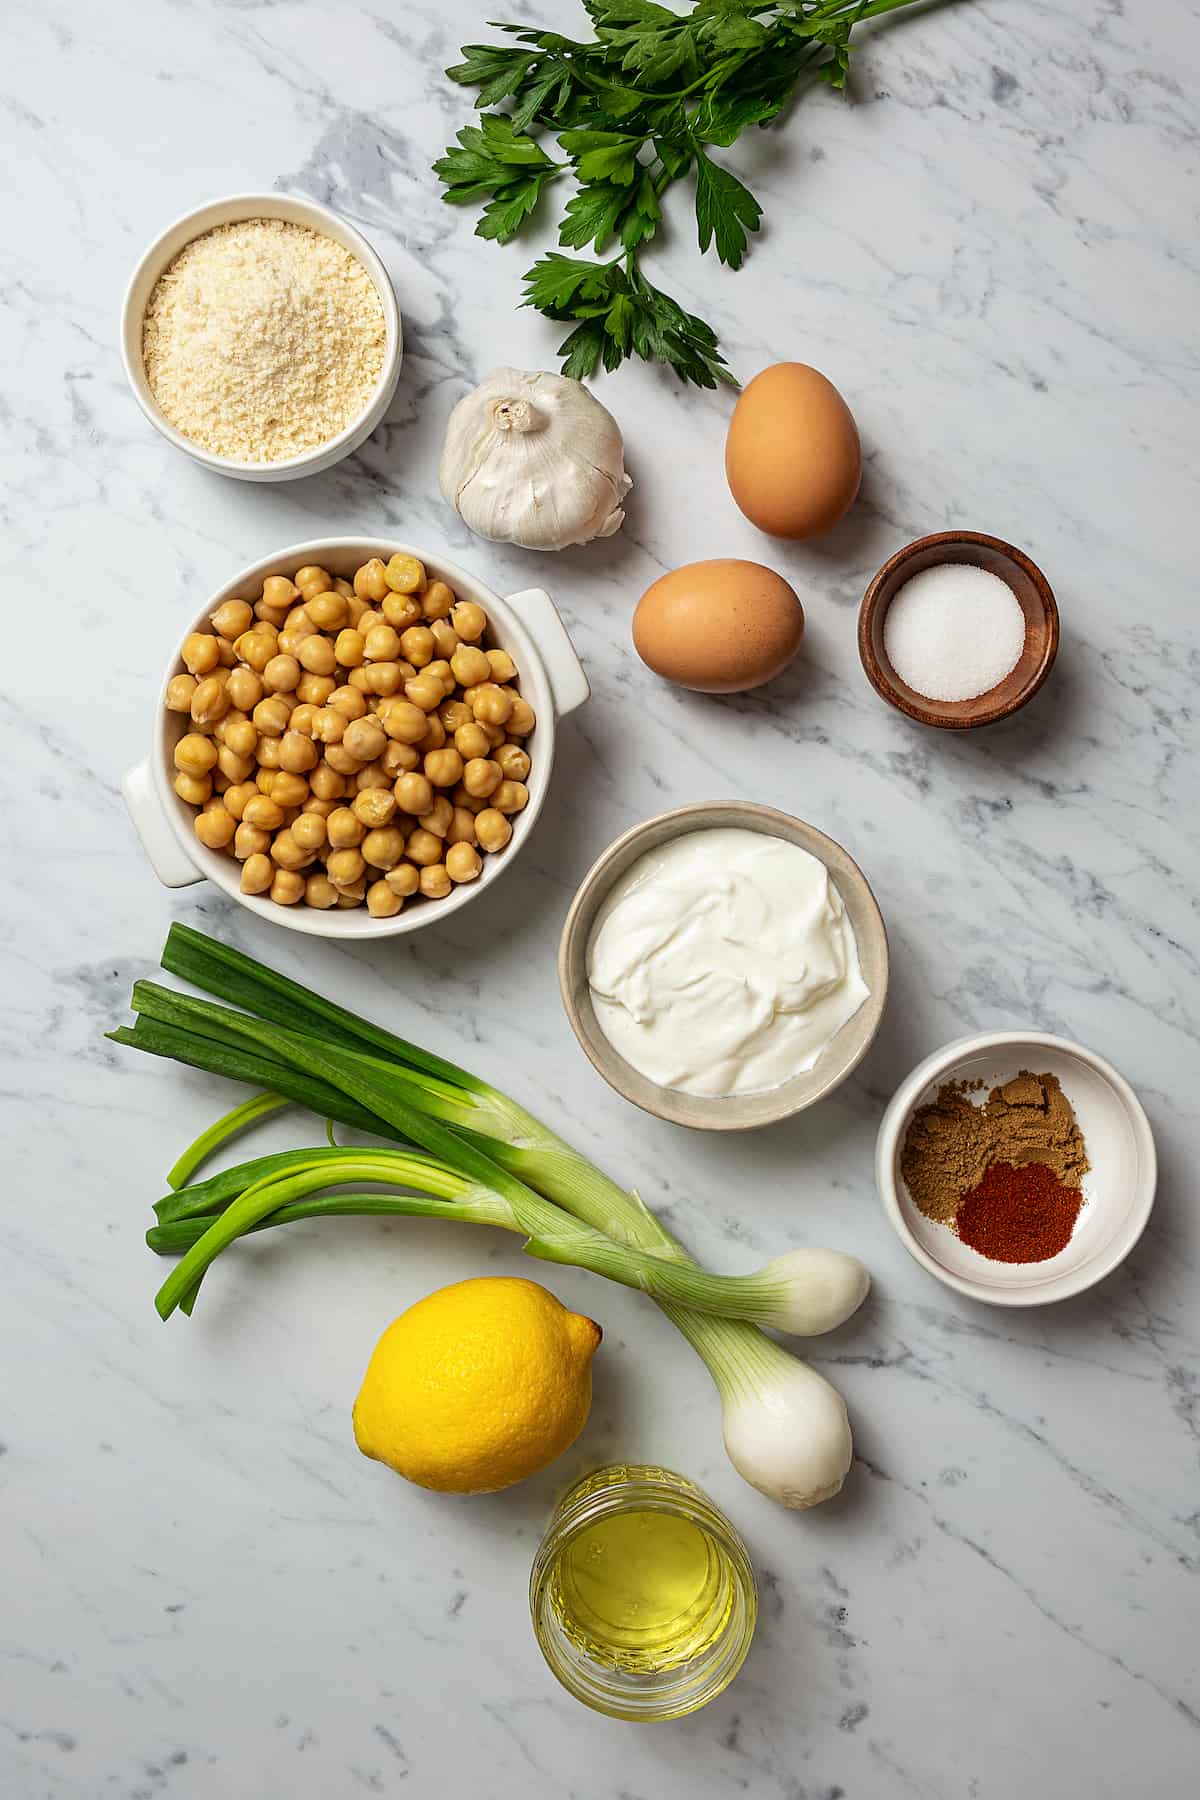 From top left: Breadcrumbs, parsley, garlic, eggs, salt, chickepeas, yogurt, seasonings green onions, lemons.